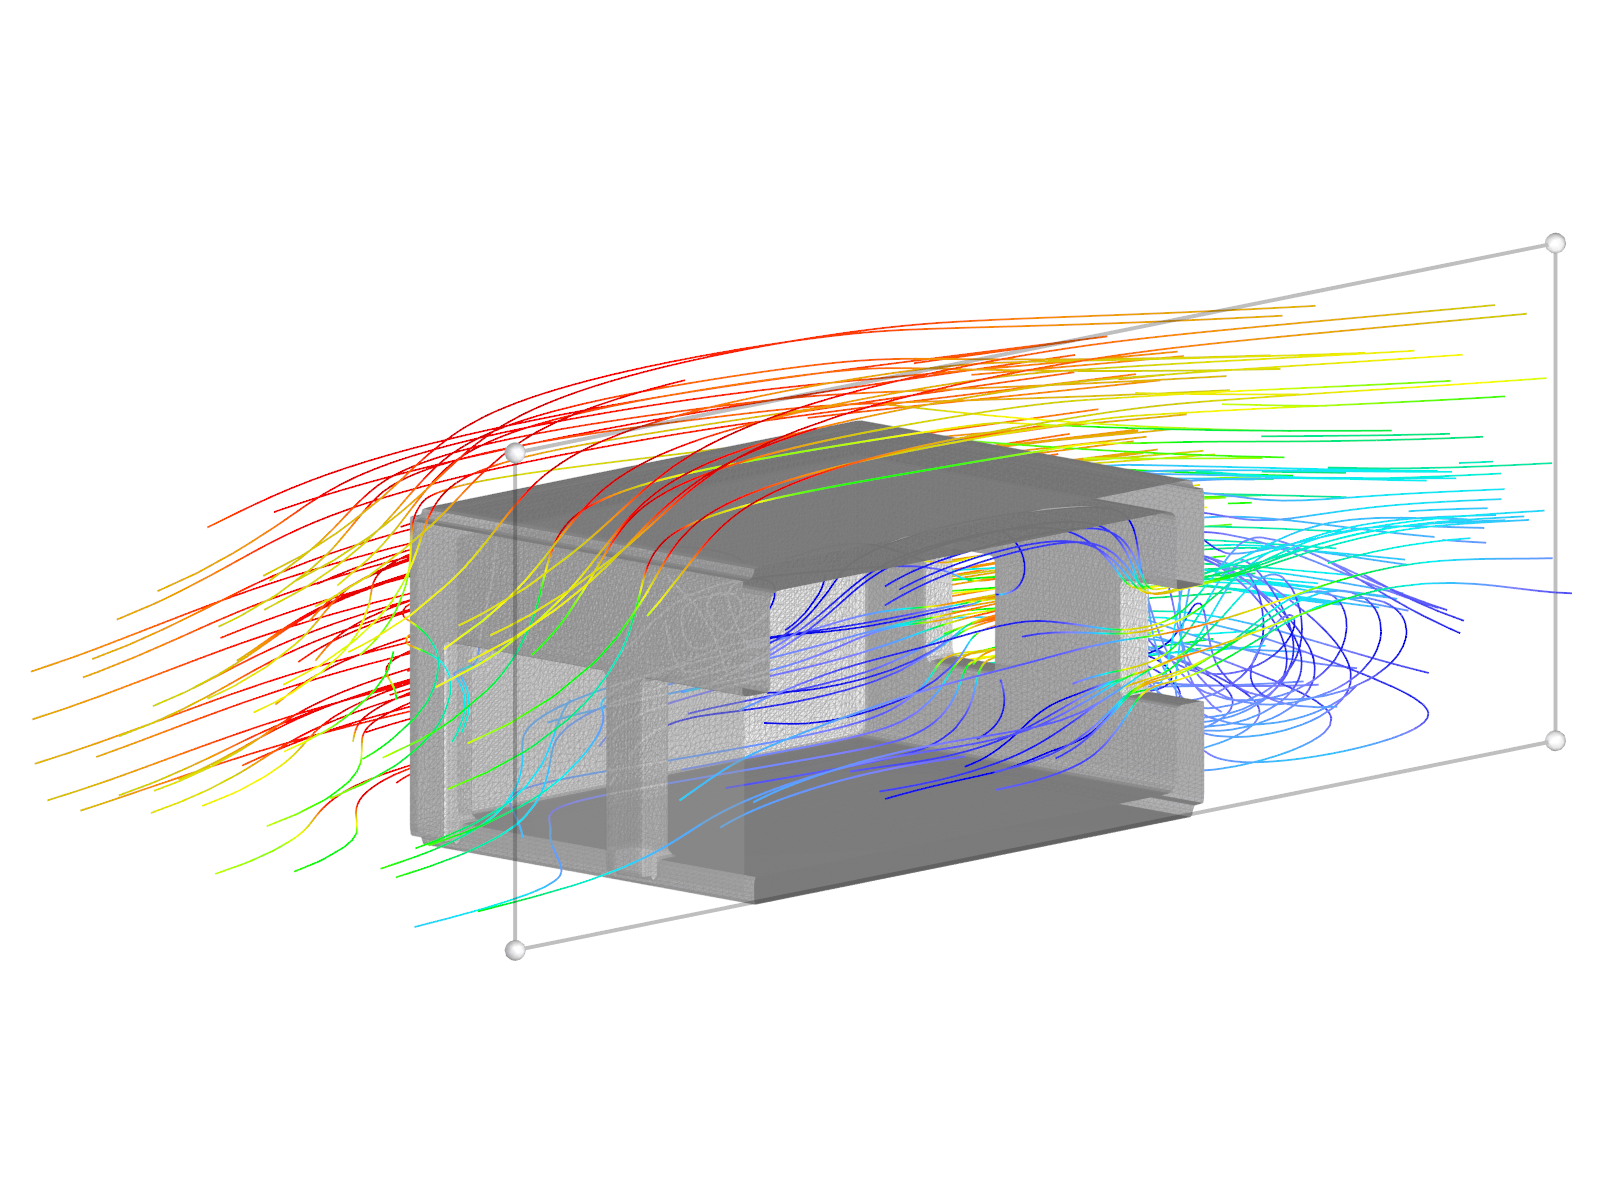 Modelo de garaje con superficie parcialmente permeable al viento